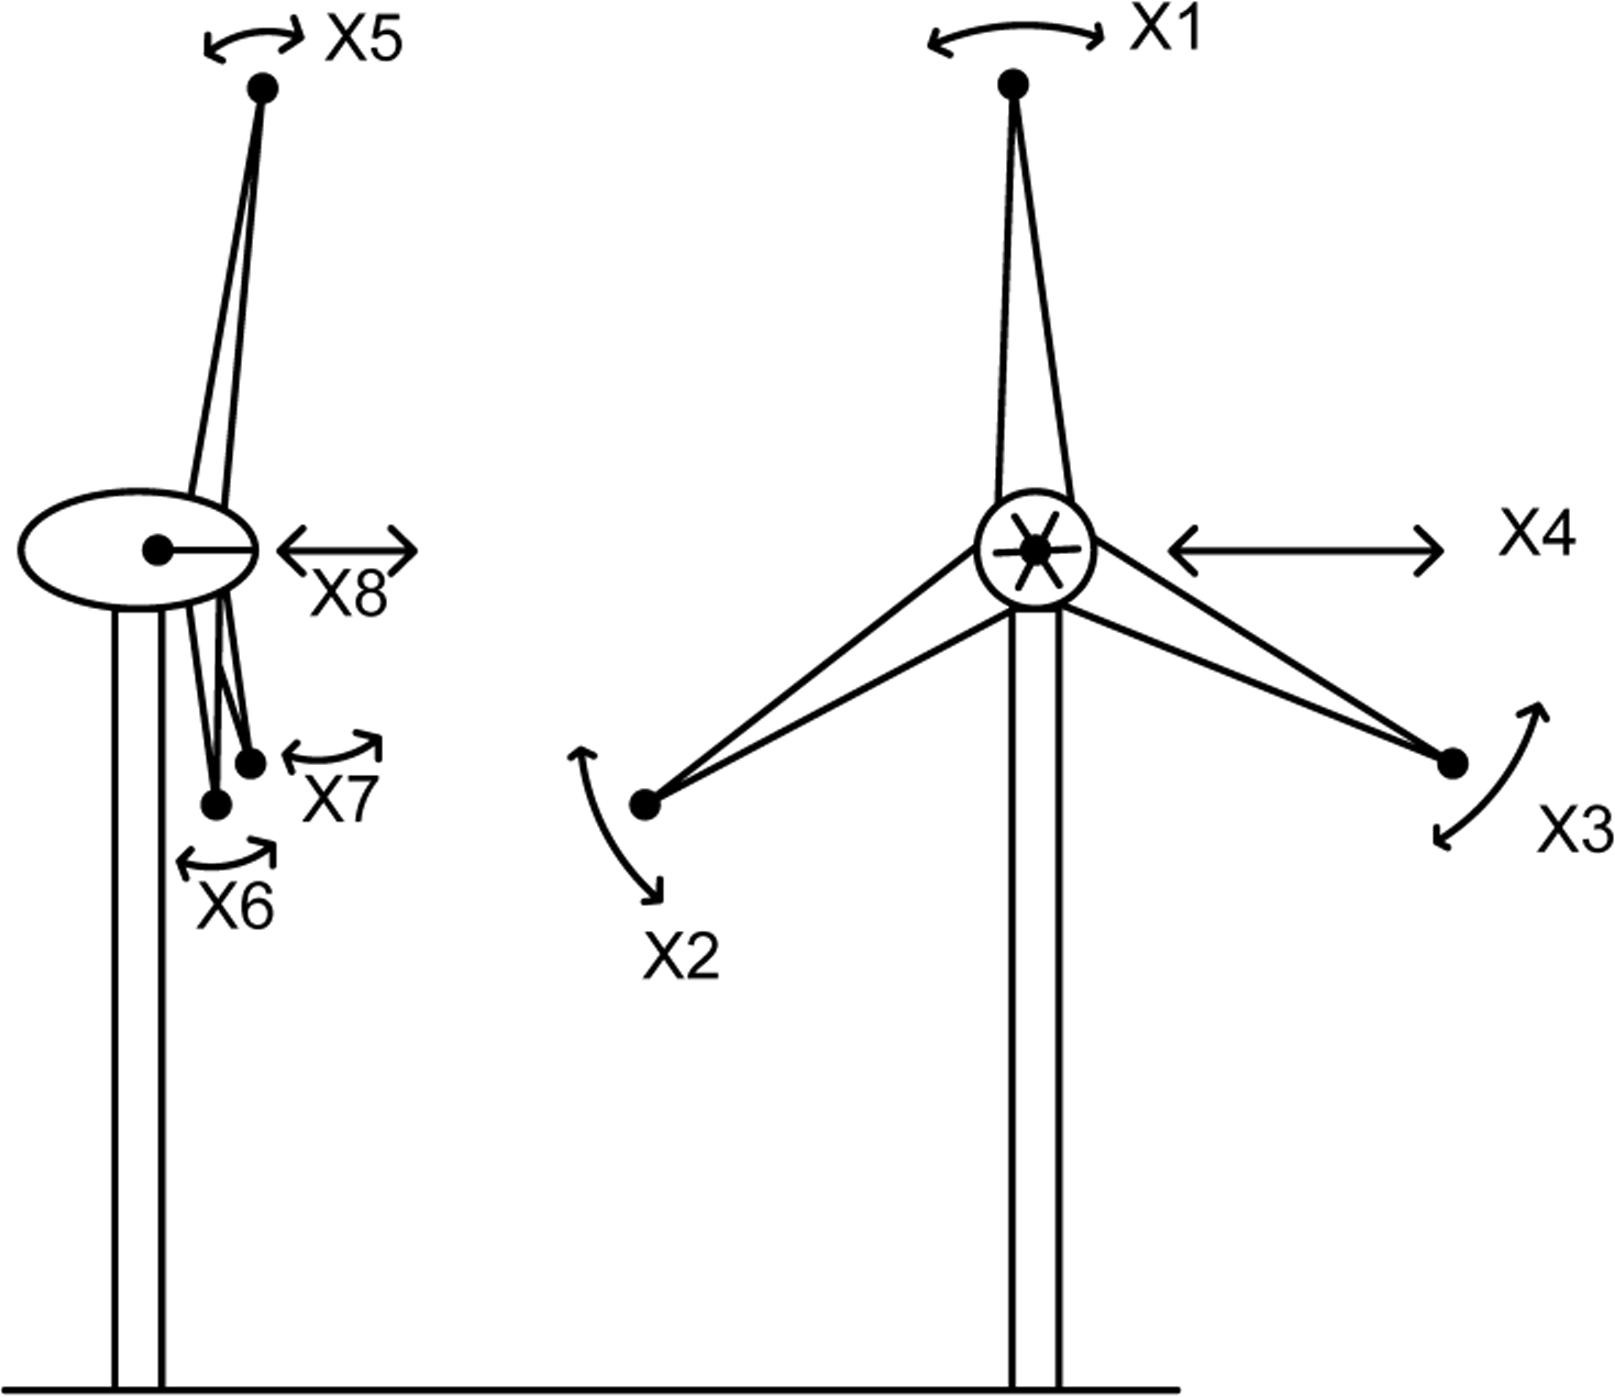  Modeling of MDOF wind turbine.